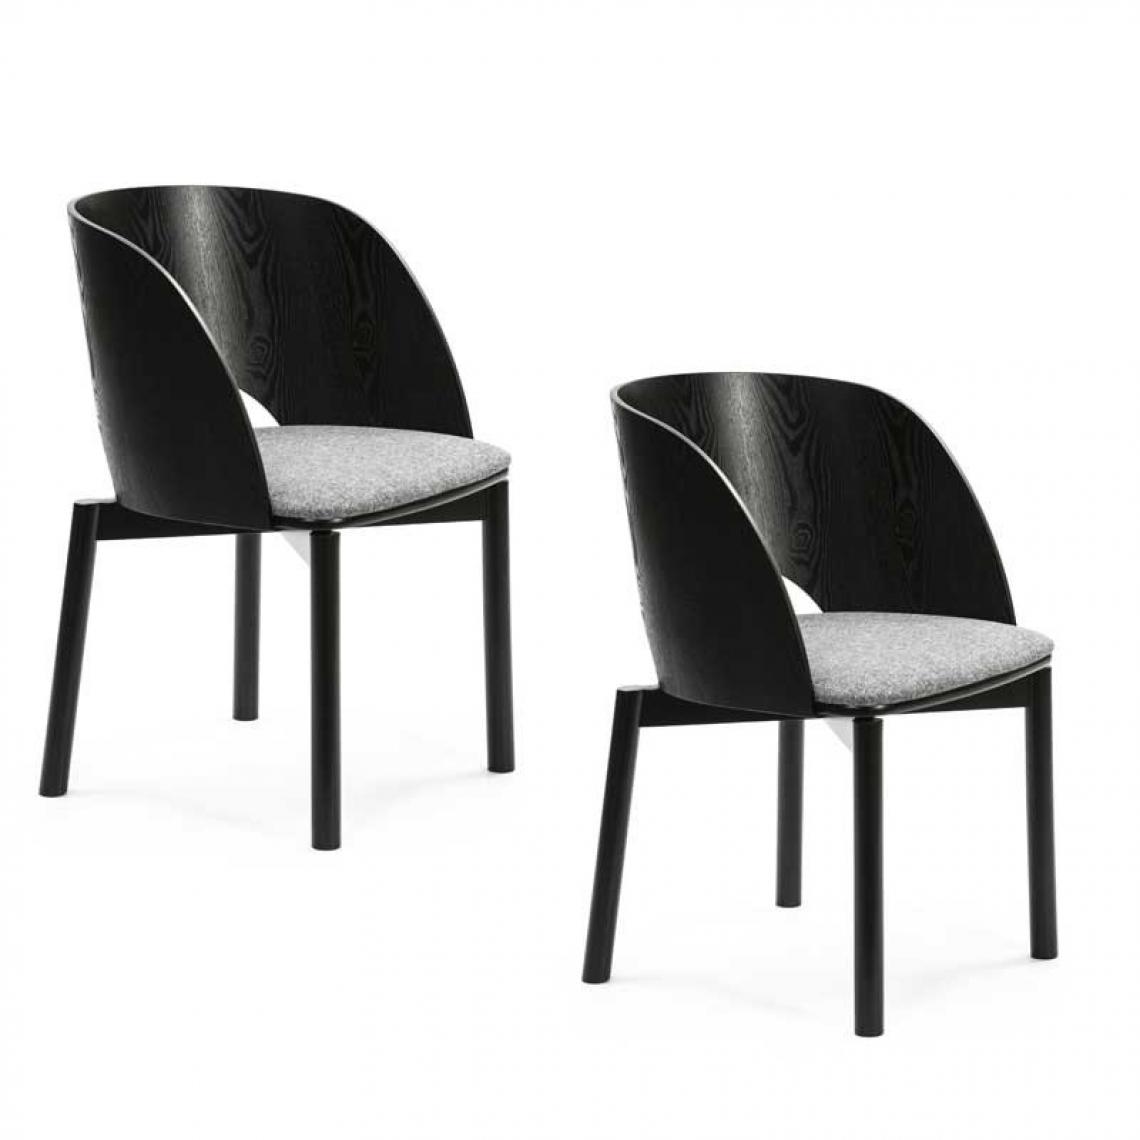 Tousmesmeubles - Duo de chaises Bois Noir - TEULAT DAM - Chaises